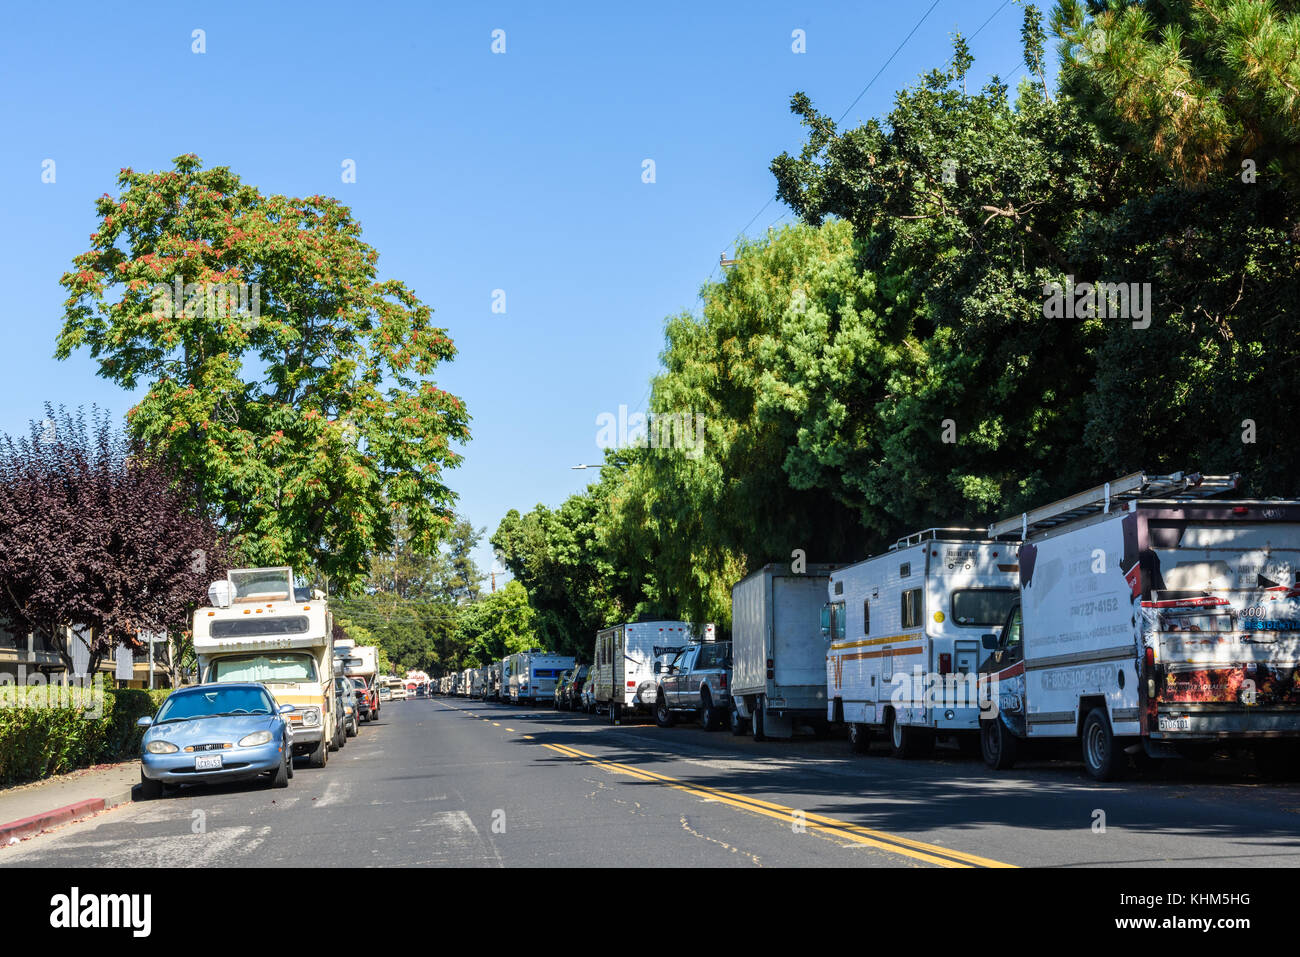 Les véhicules garés le long de crisanto street à Mountain View, Californie abritent de nombreuses dans la région de la baie. Banque D'Images